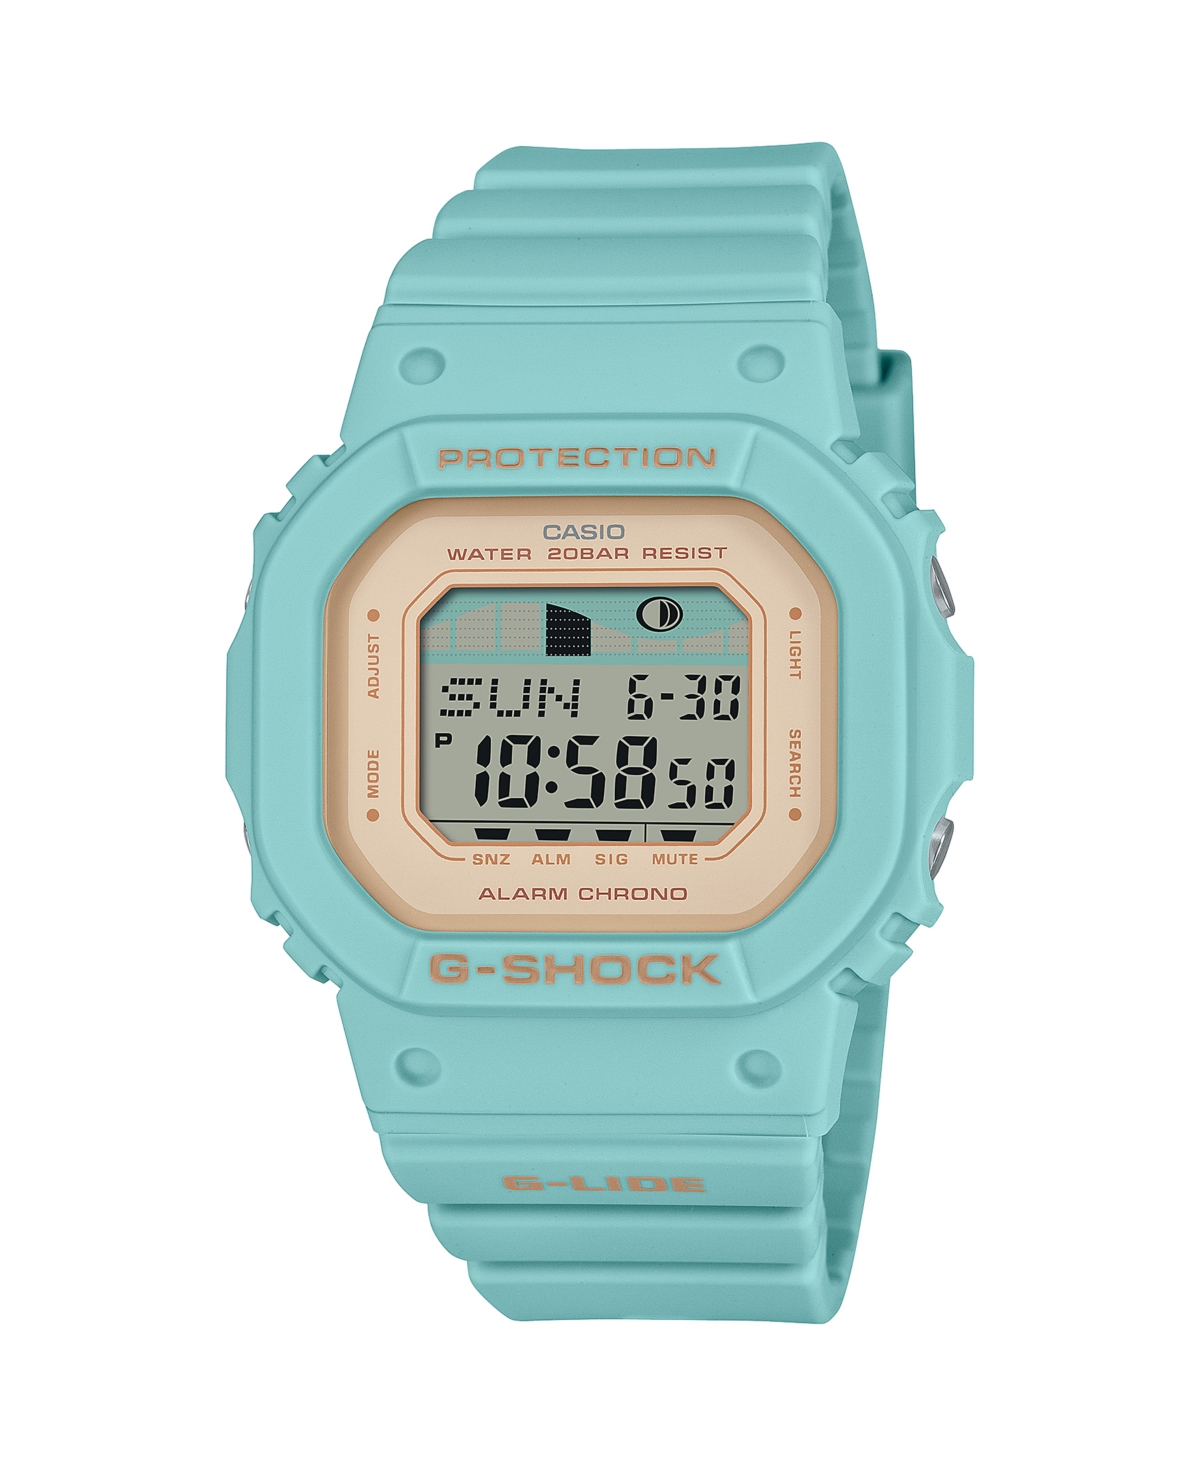 Unisex Digital Aqua Plastic Watch 40.5mm, GLXS5600-3 - Aqua